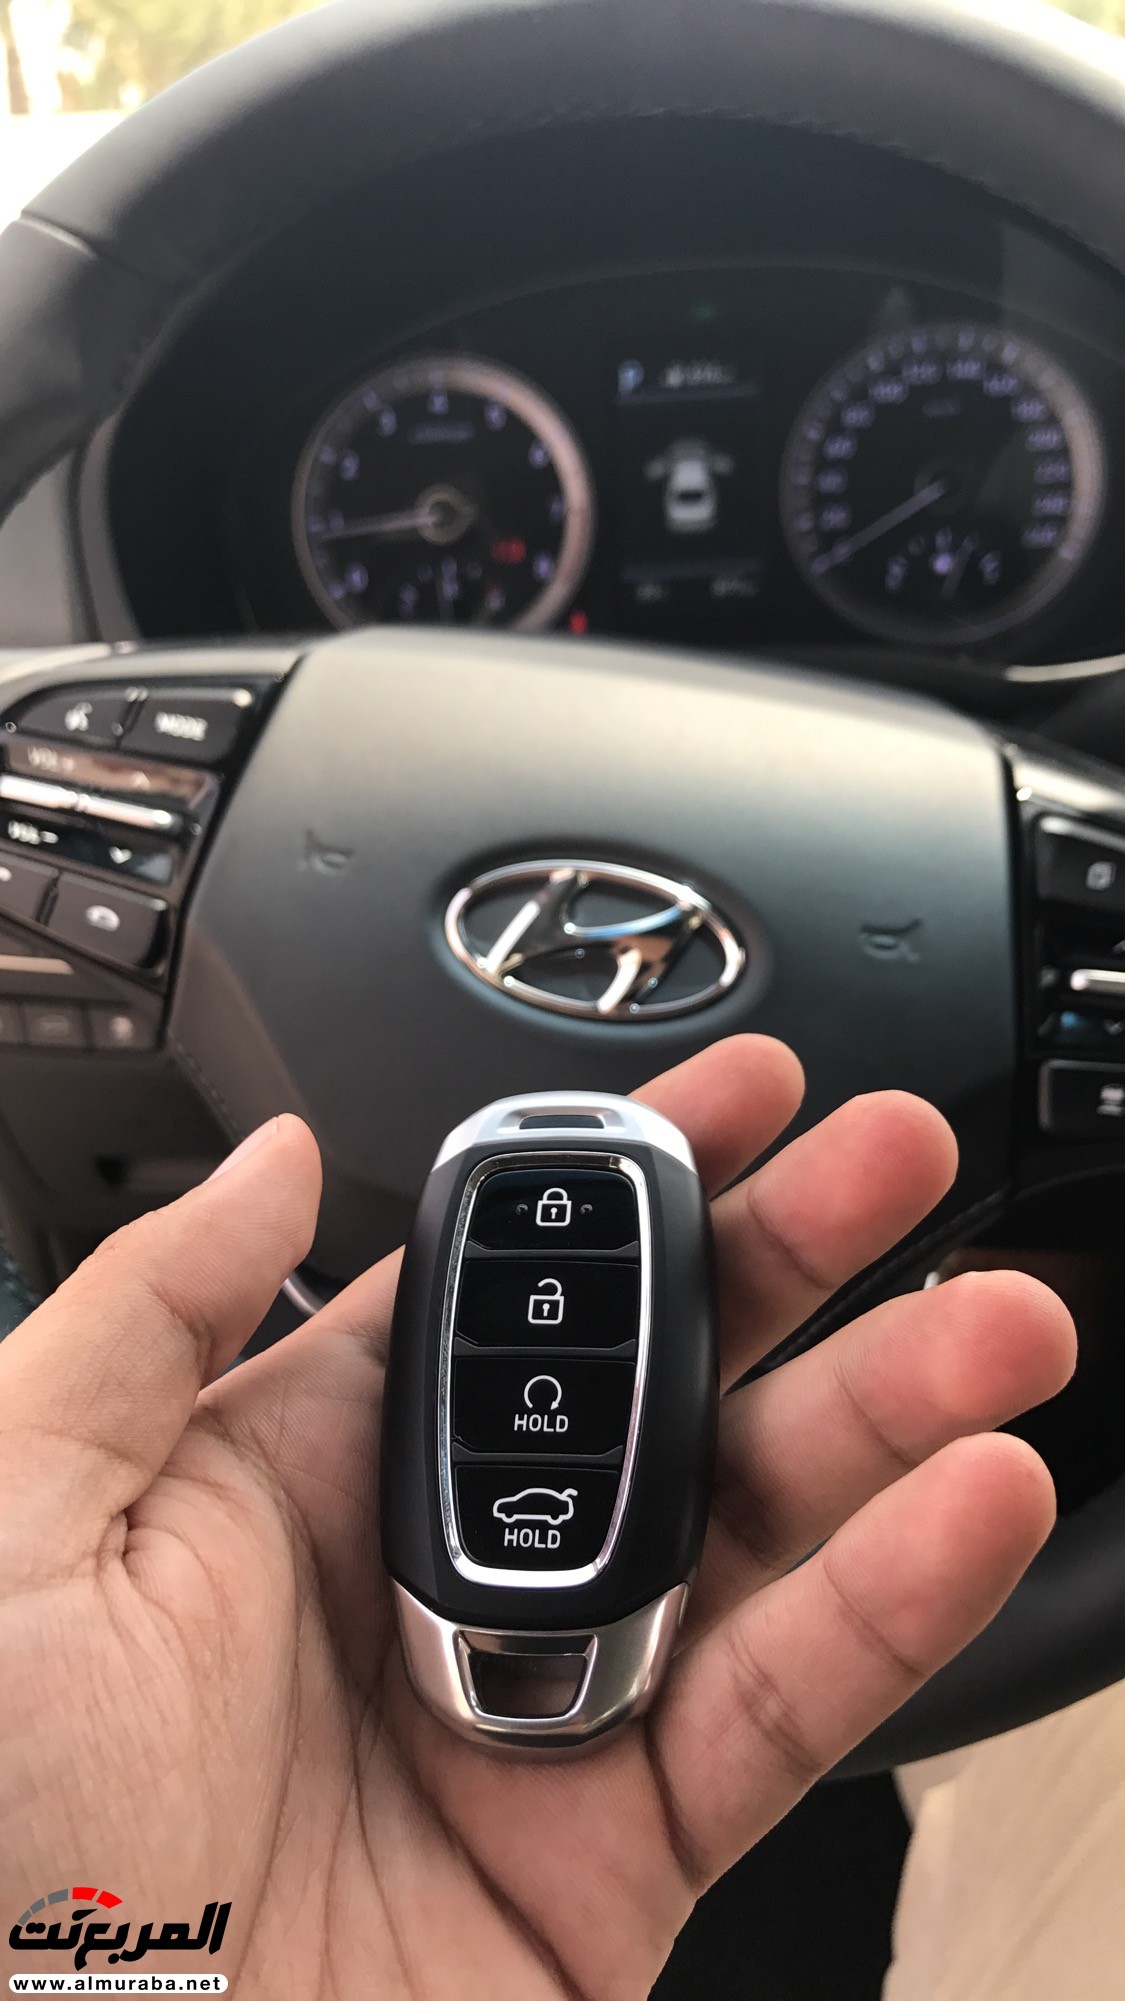 هيونداي ازيرا 2018 الشكل الجديد كلياً "تقرير وفيديو وصور ومواصفات واسعار" Hyundai Azera 9